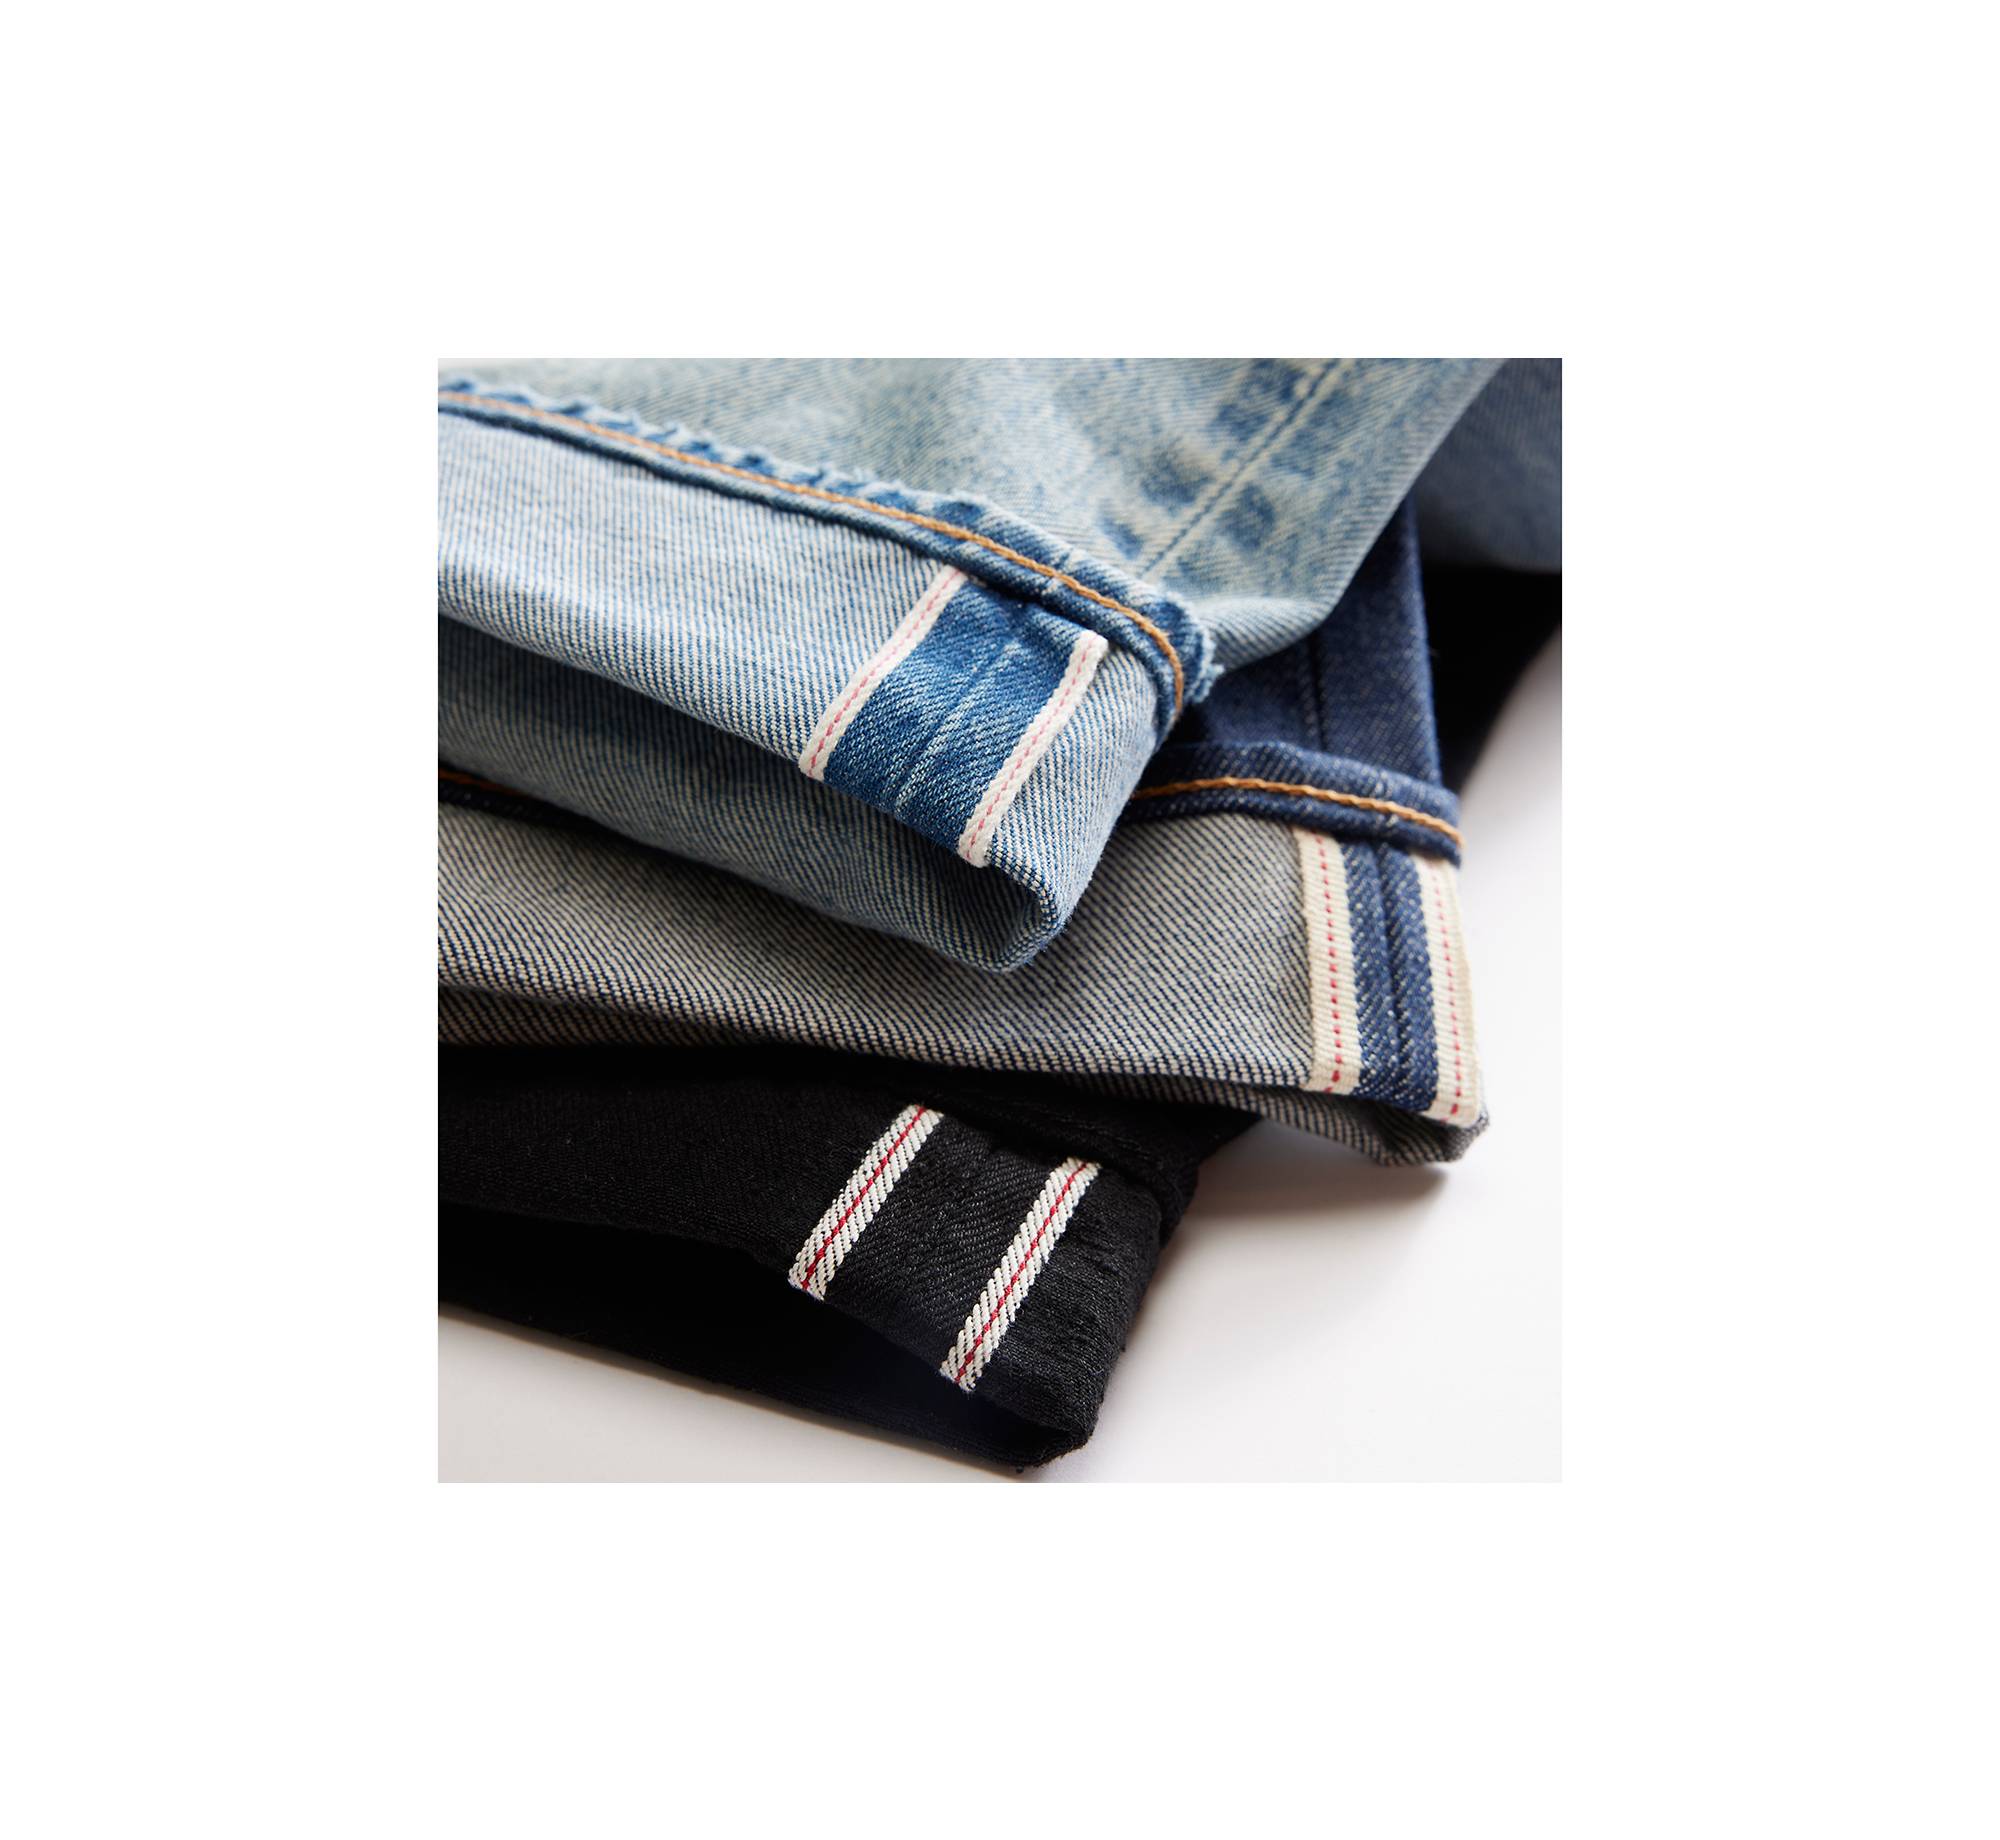 1980s 501® Original Fit Selvedge Men's Jeans - Medium Wash 